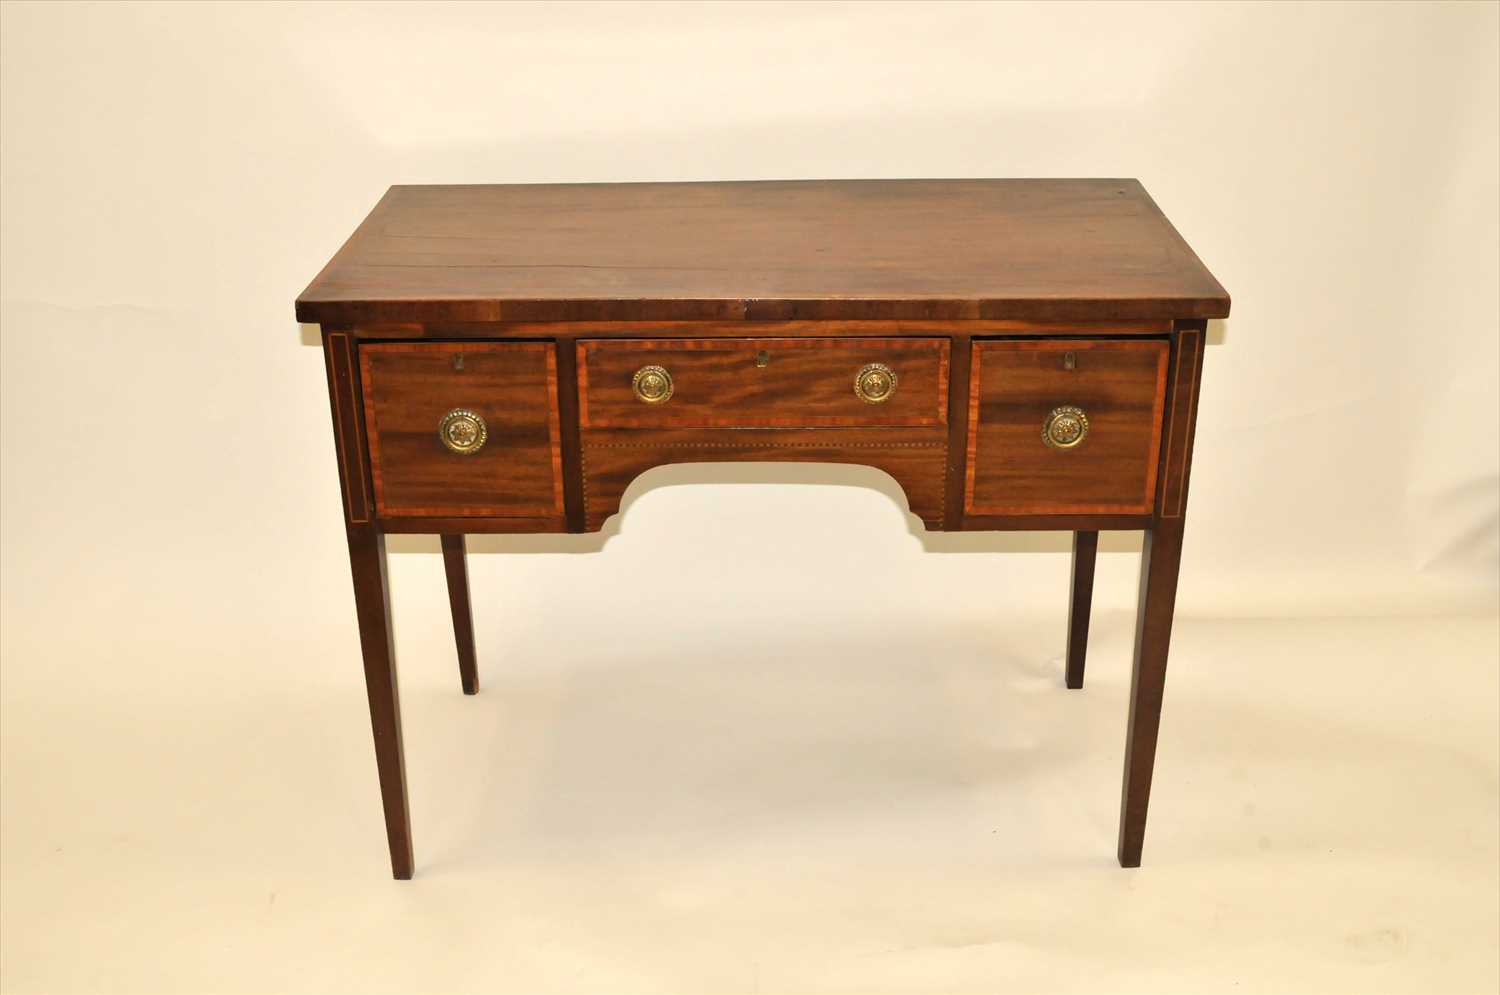 An Edwardian mahogany desk